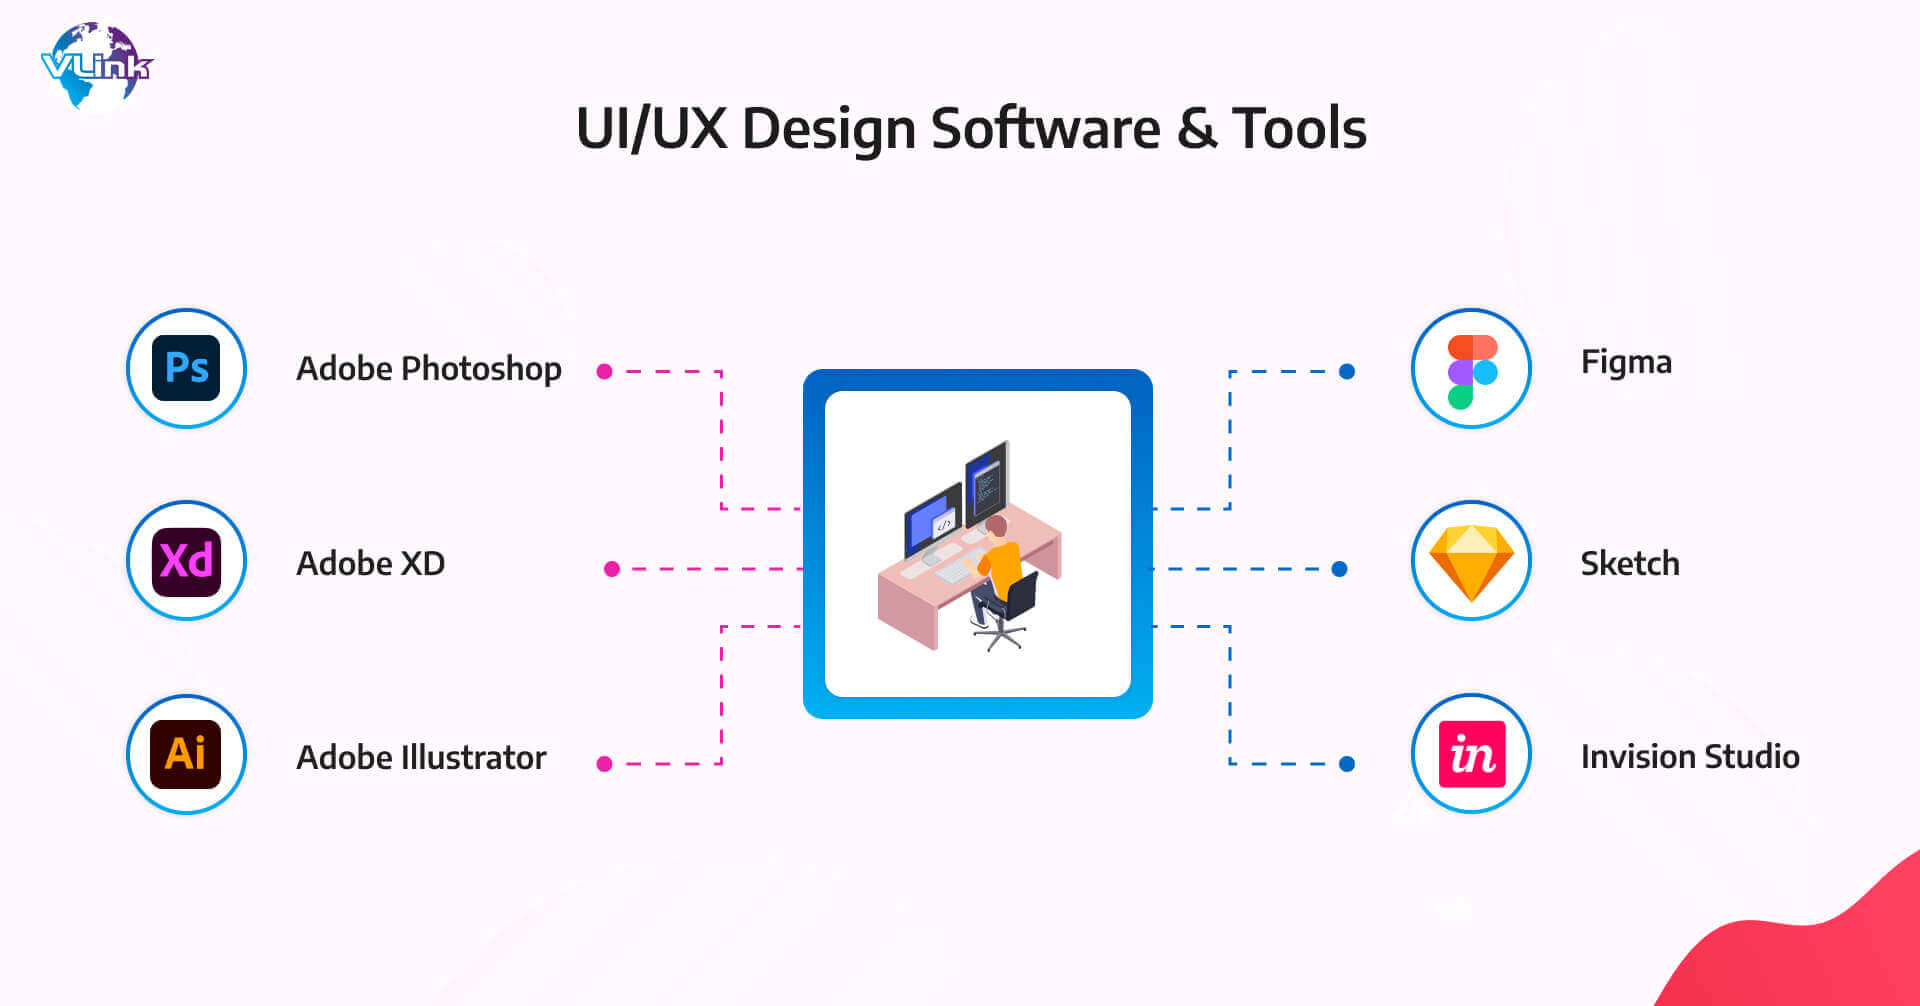 UIUX designer must possess visual design software & tools